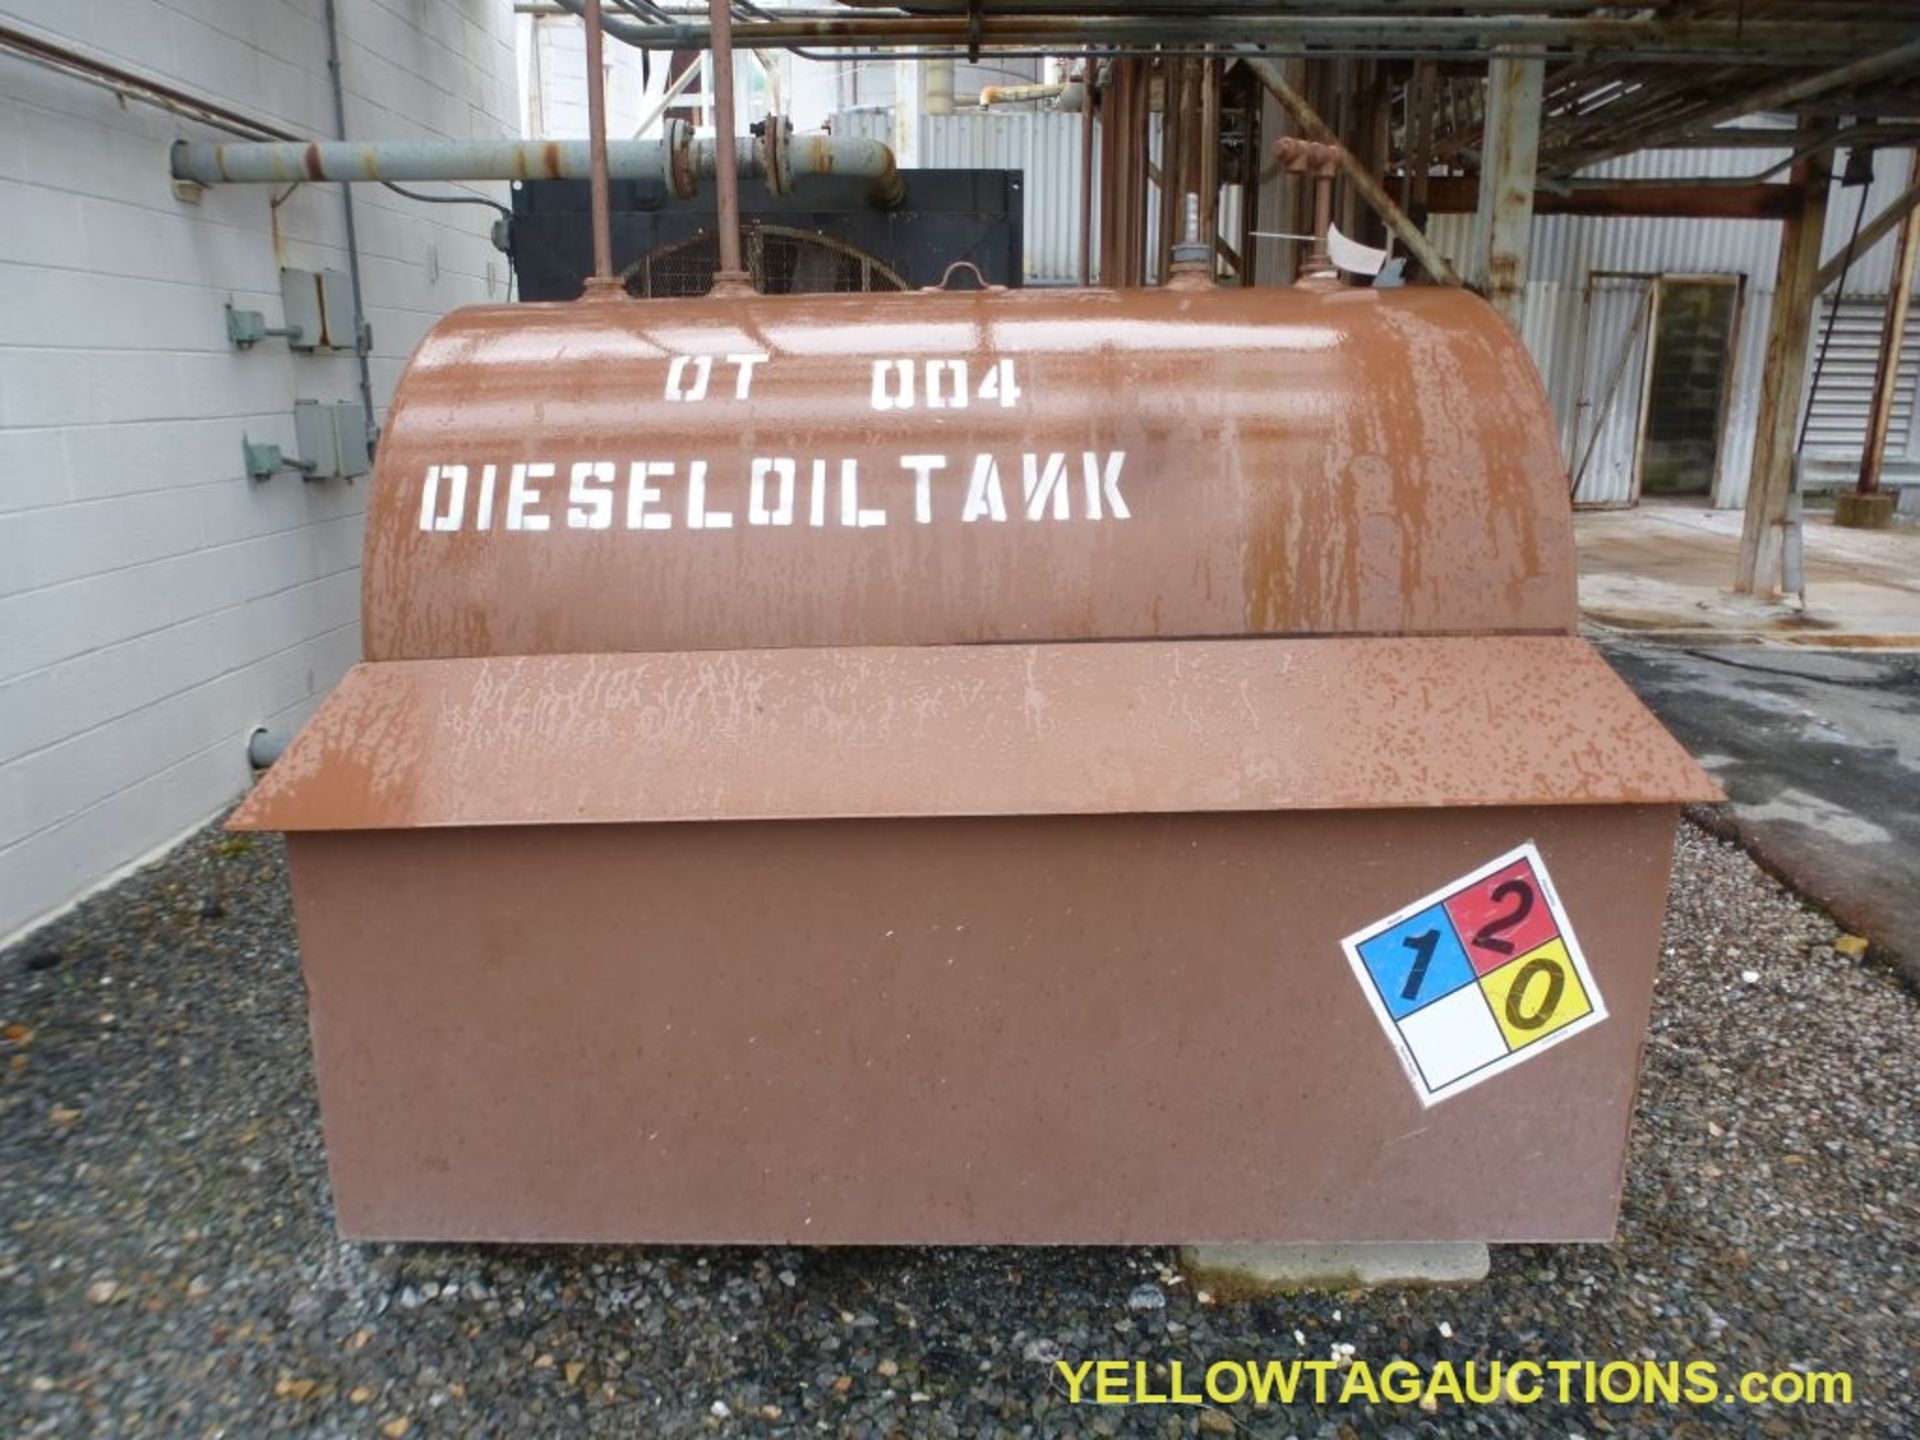 Diesel Tank - 79" x 66" - Image 2 of 4